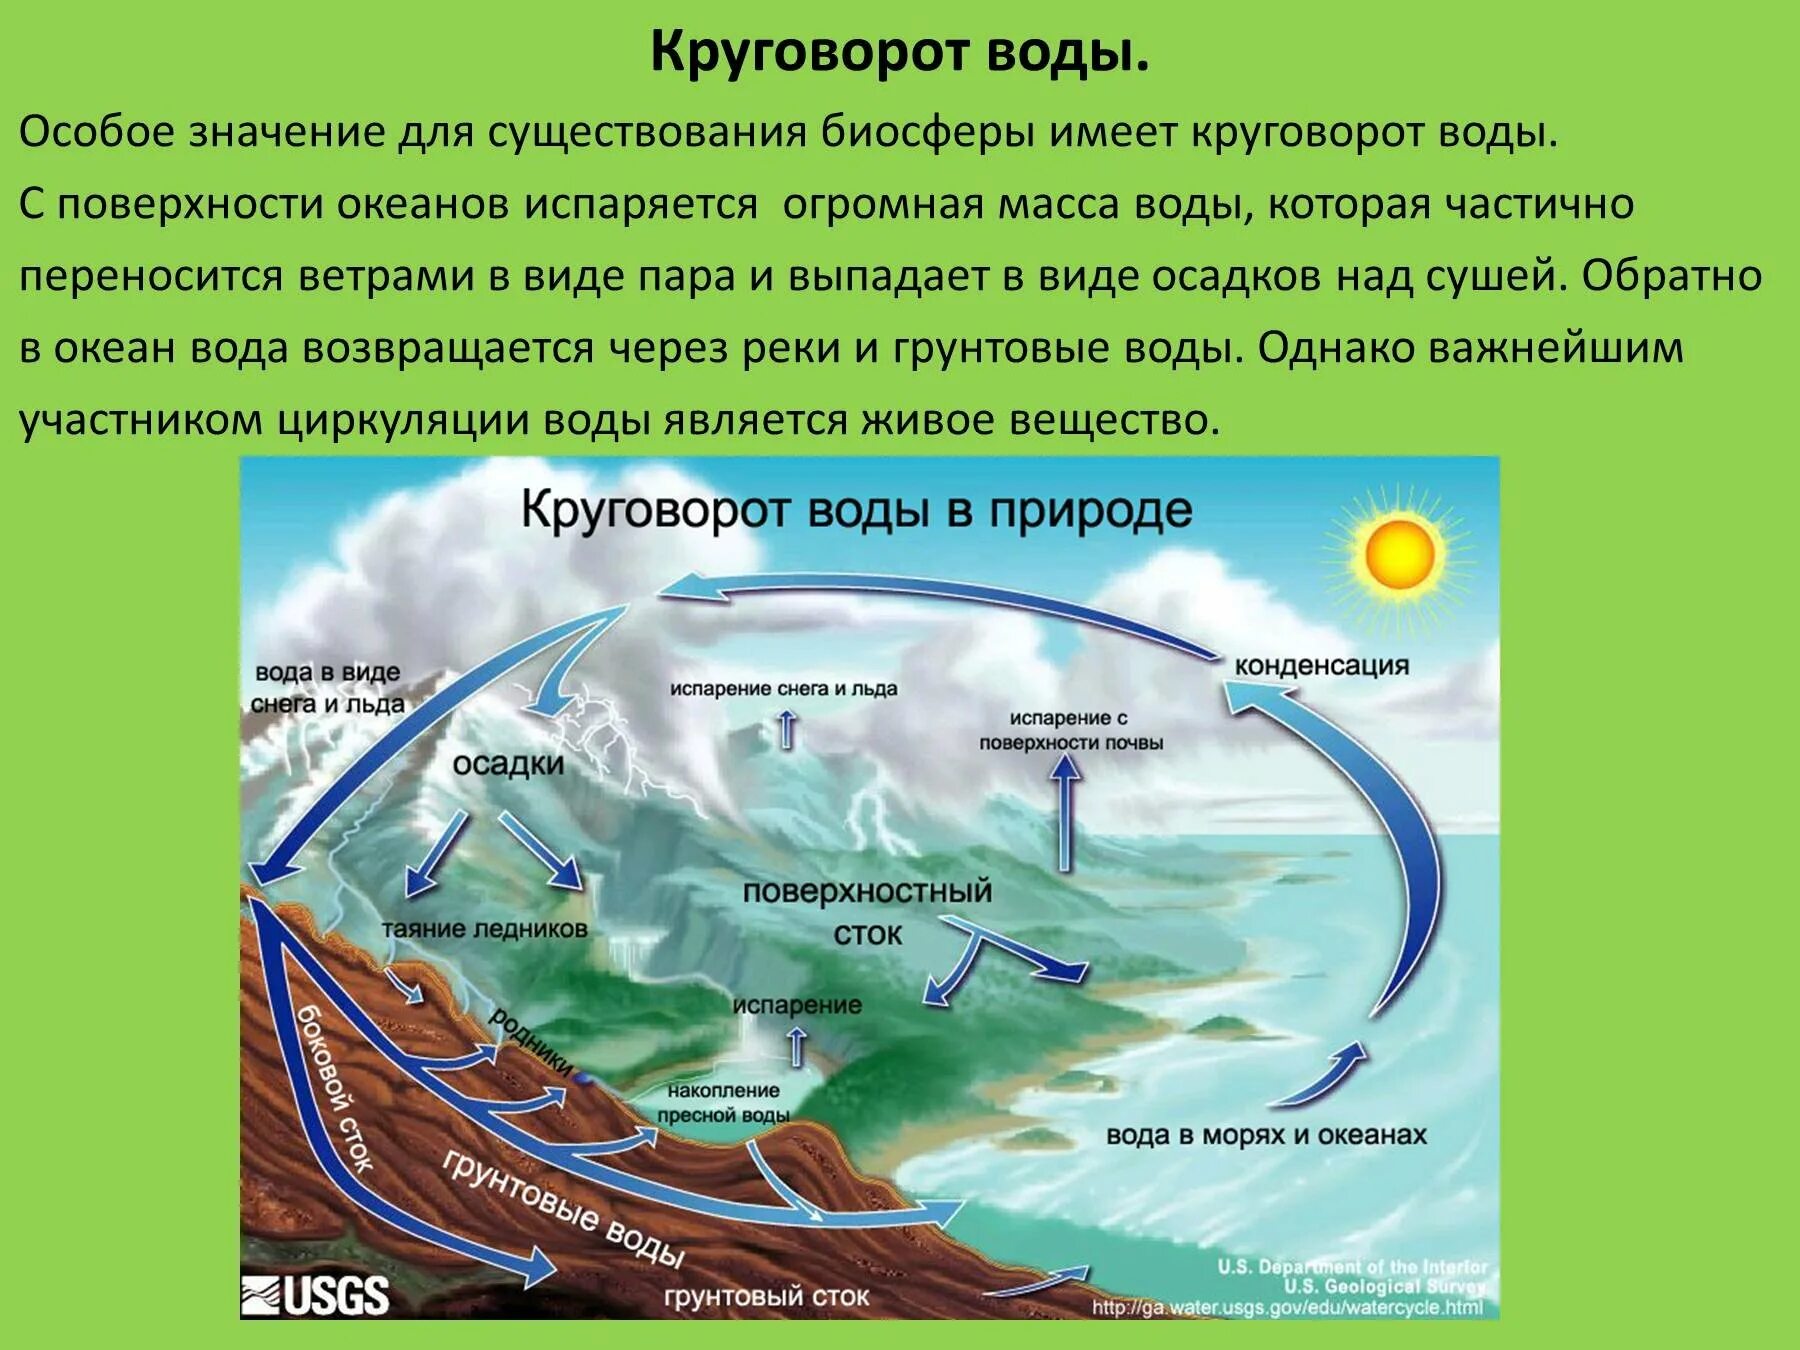 Мировой круговорот в природе 6 класс. Биосфера круговорот воды в биосфере. Гидрологический цикл круговорота воды. Круговорот воды в биосфере 6 класс география. Как называется круговорот в природе